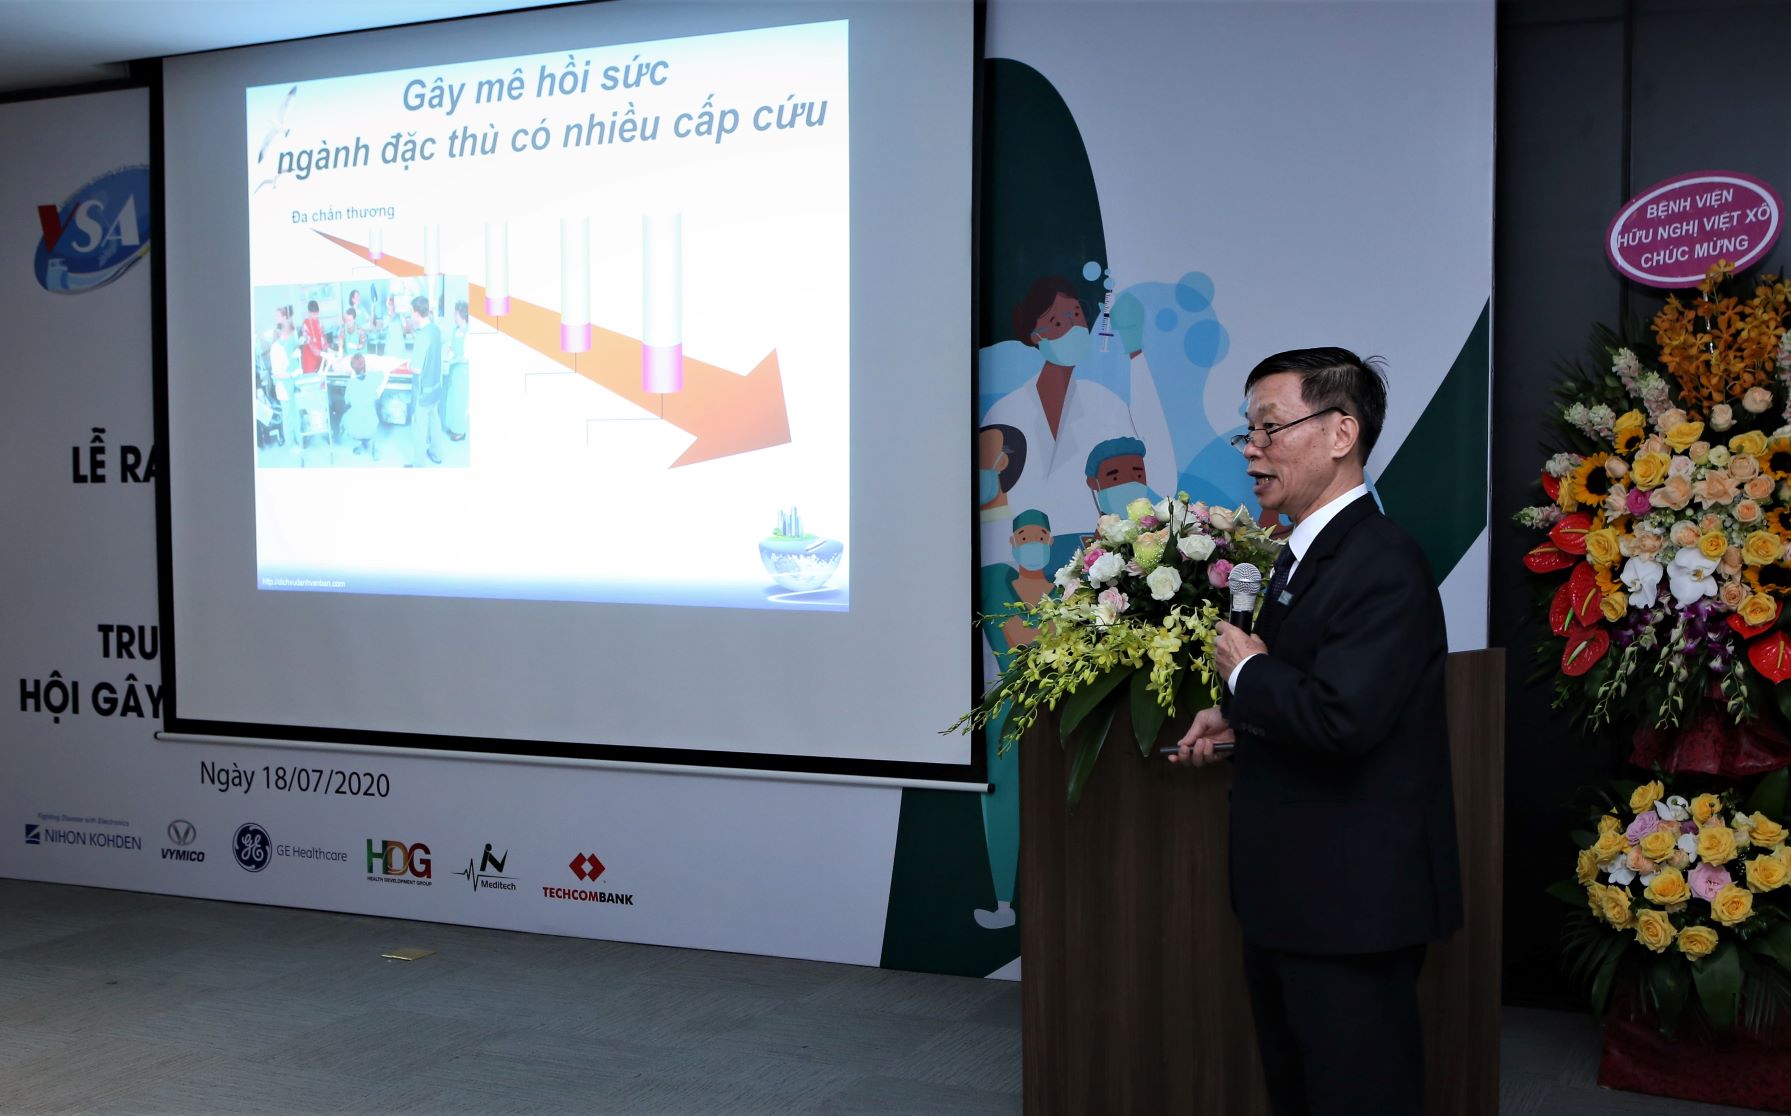 PGS.TS Công Quyết Thắng – Giám đốc Trung tâm SimCAT, Chủ tịch Hội Gây mê Hồi sức Việt Nam giới thiệu mô hình hoạt động của Trung tâm SimCAT